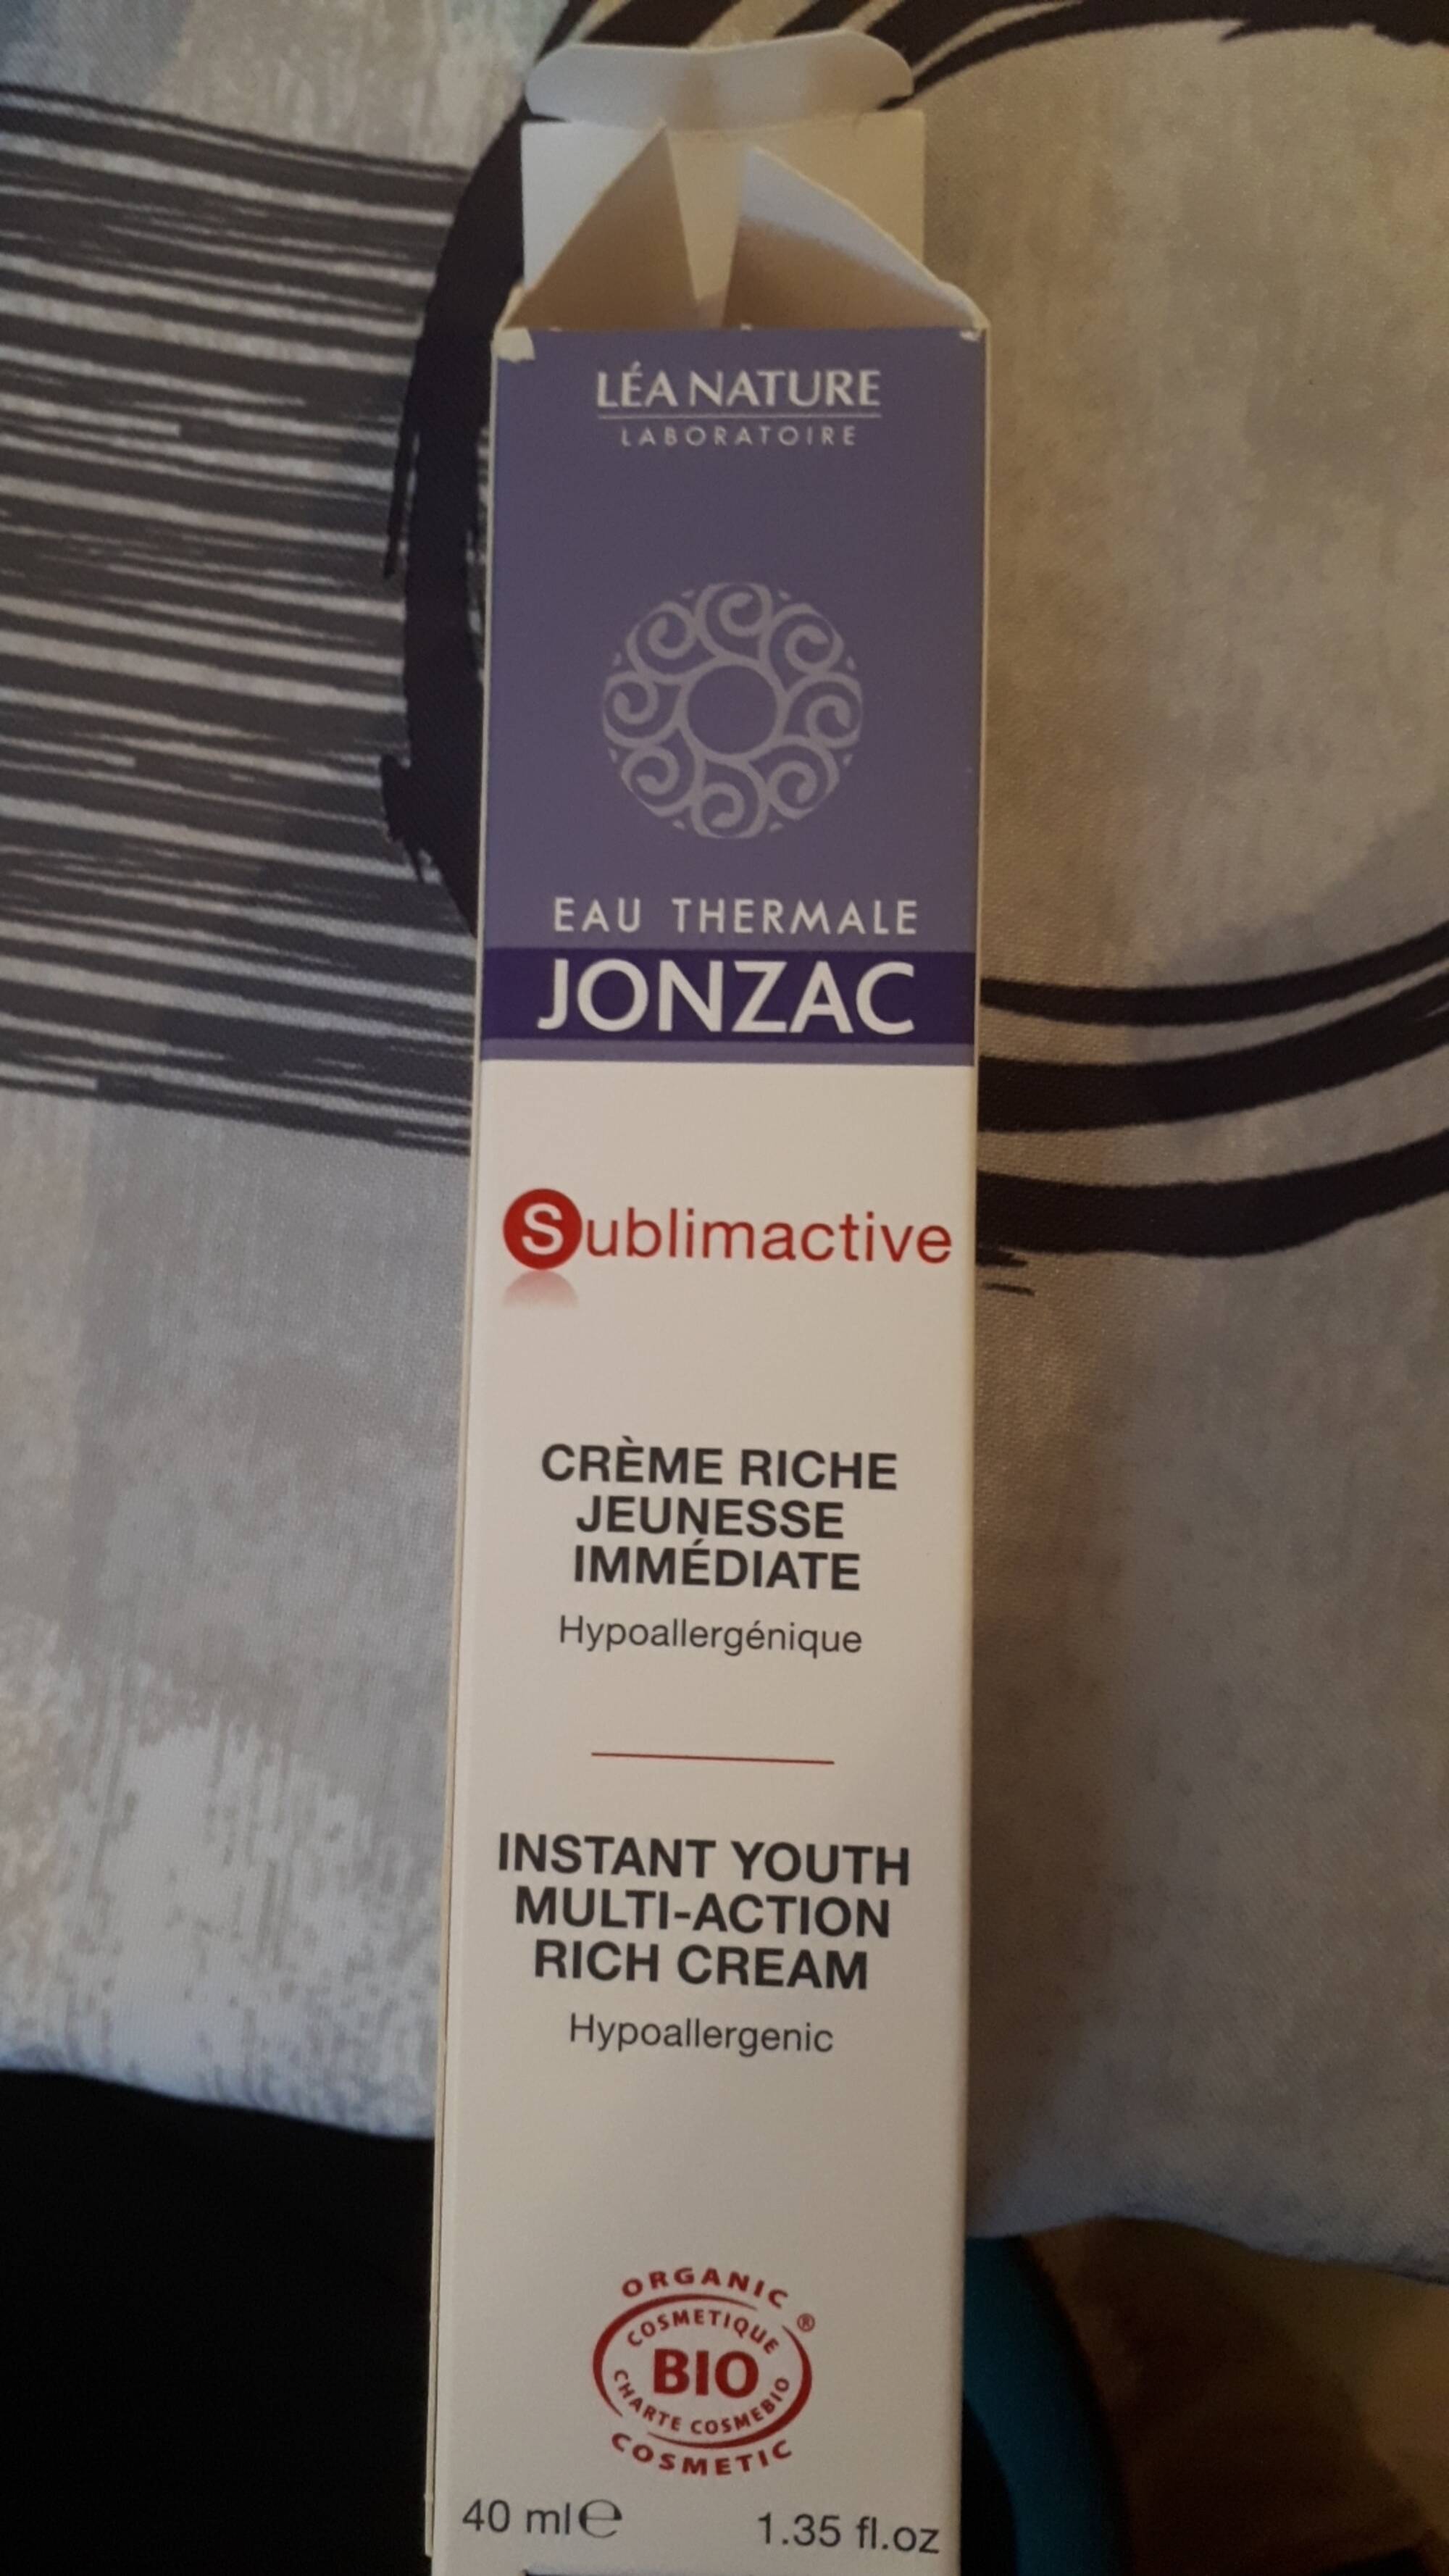 EAU THERMALE JONZAC - Sublimactive - Crème riche jeunesse immédiate